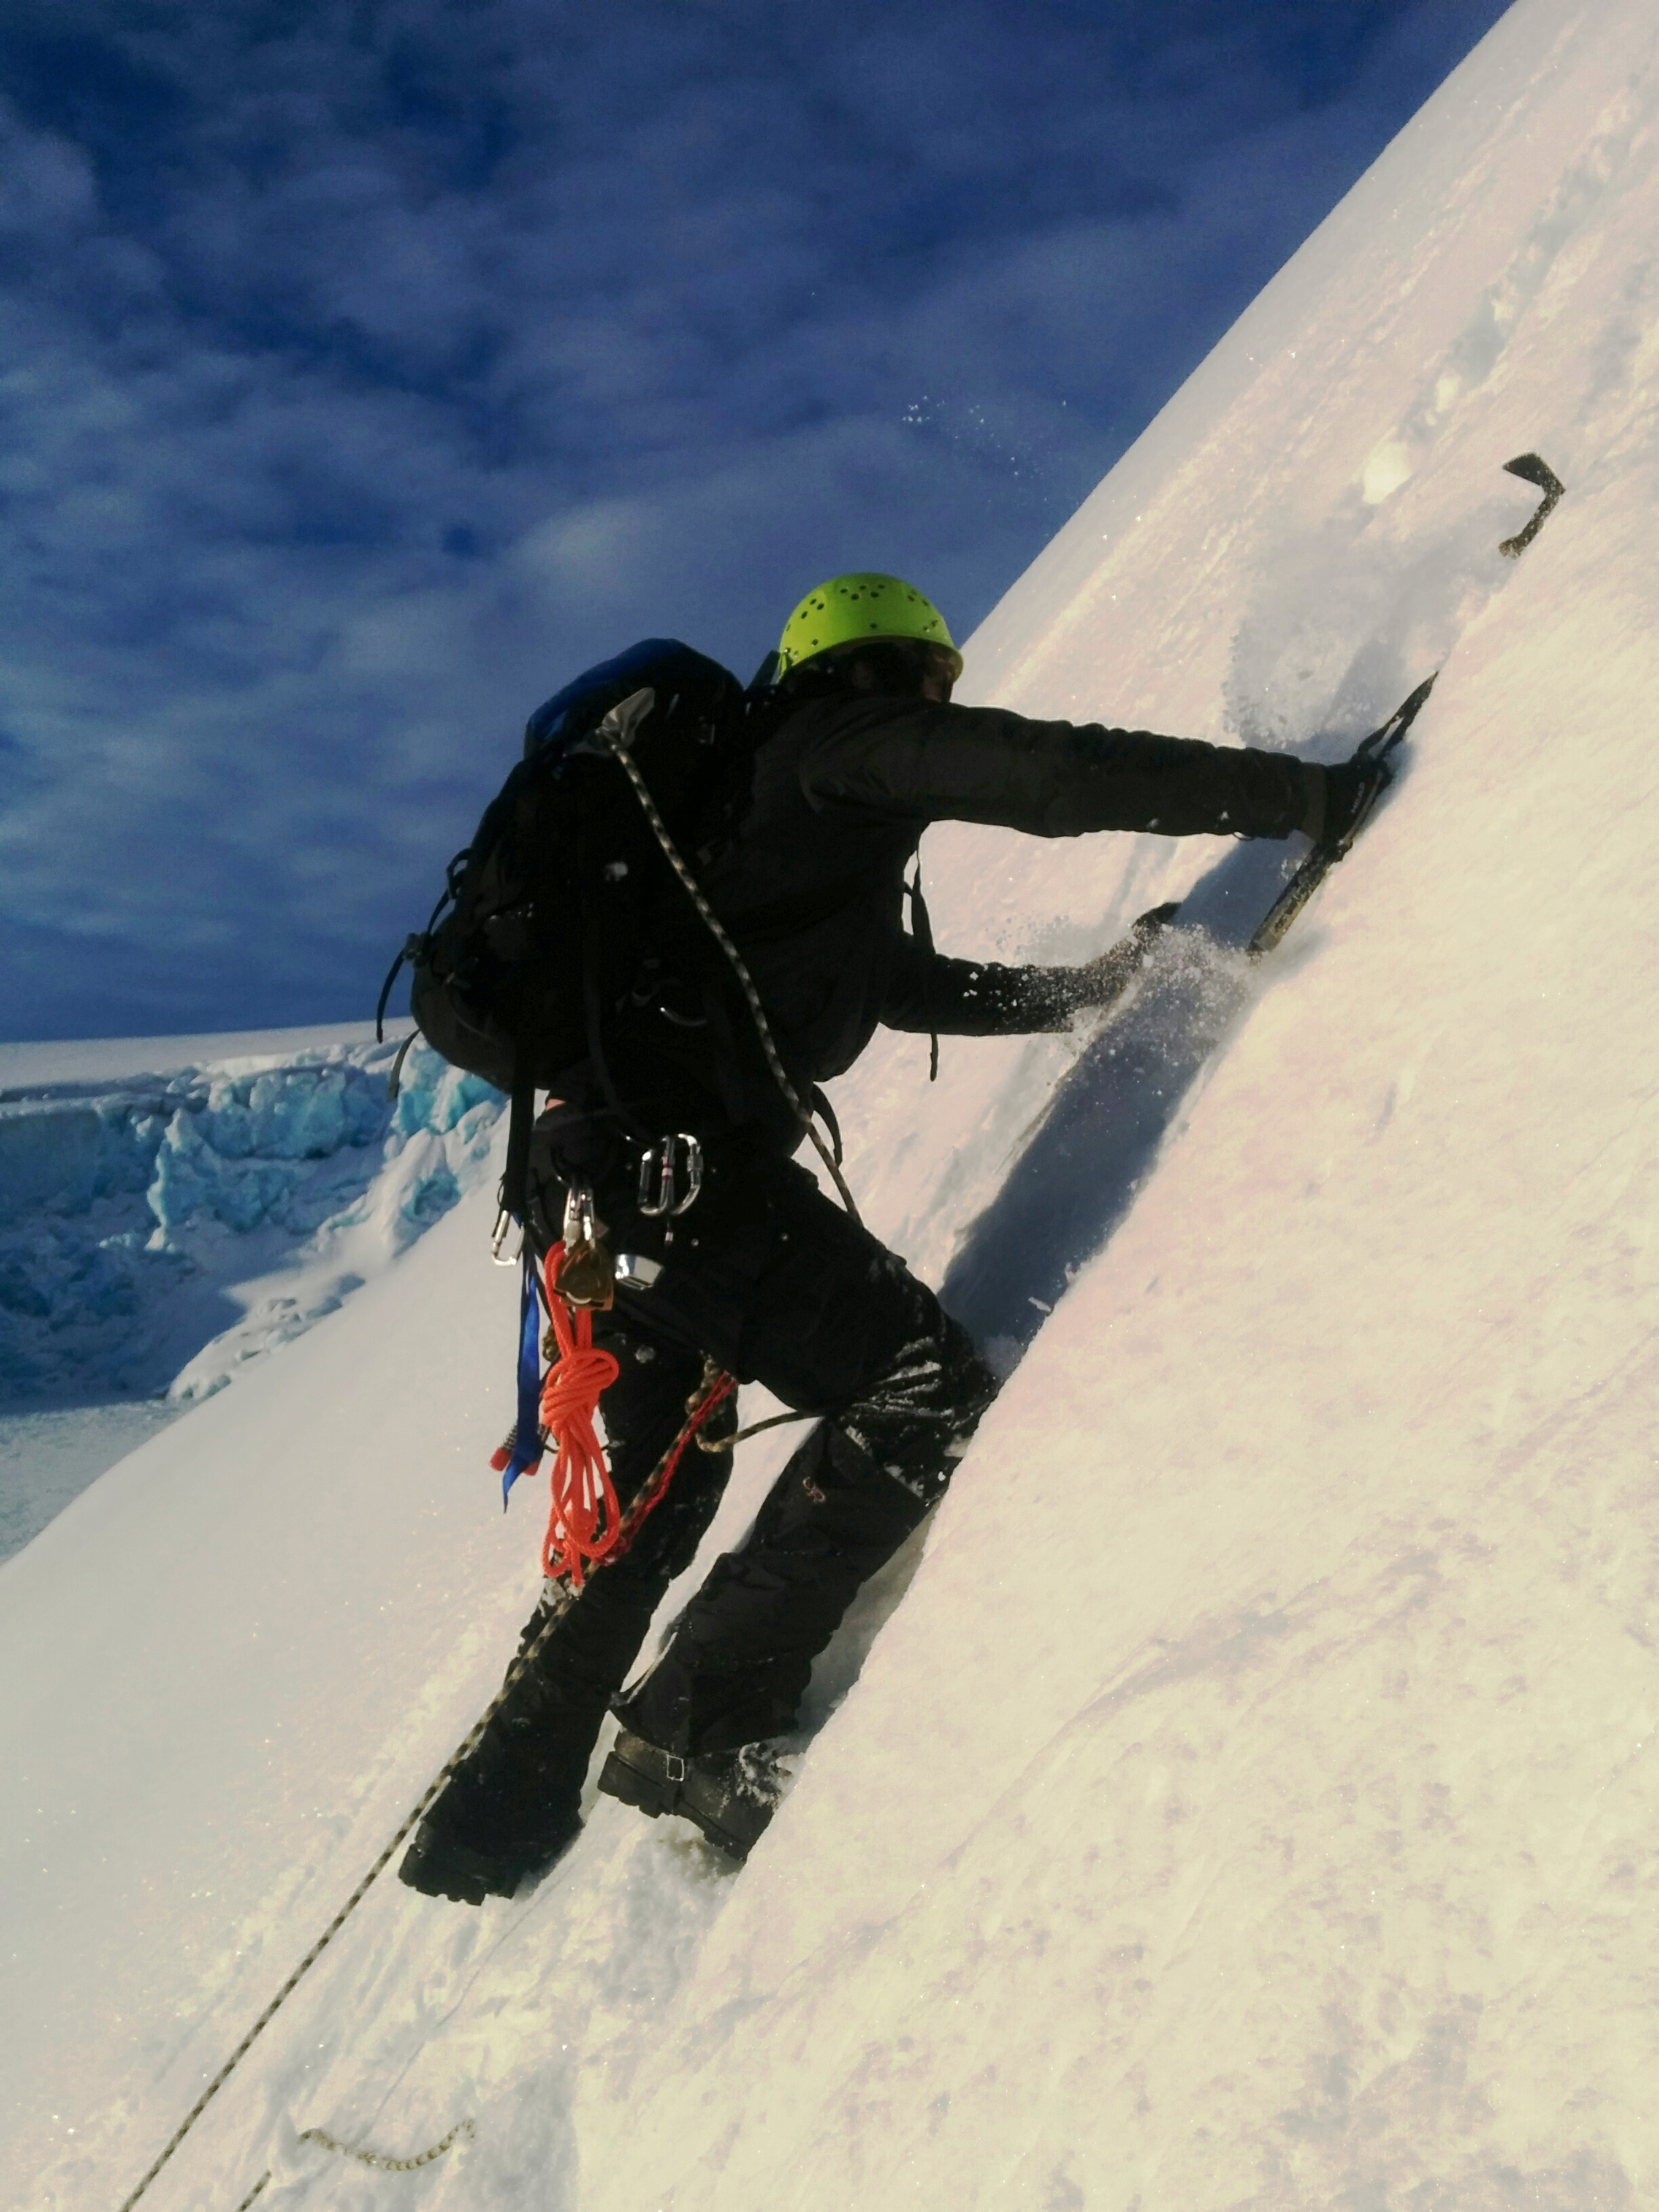 A man ascends a glacier face using an ice axe.